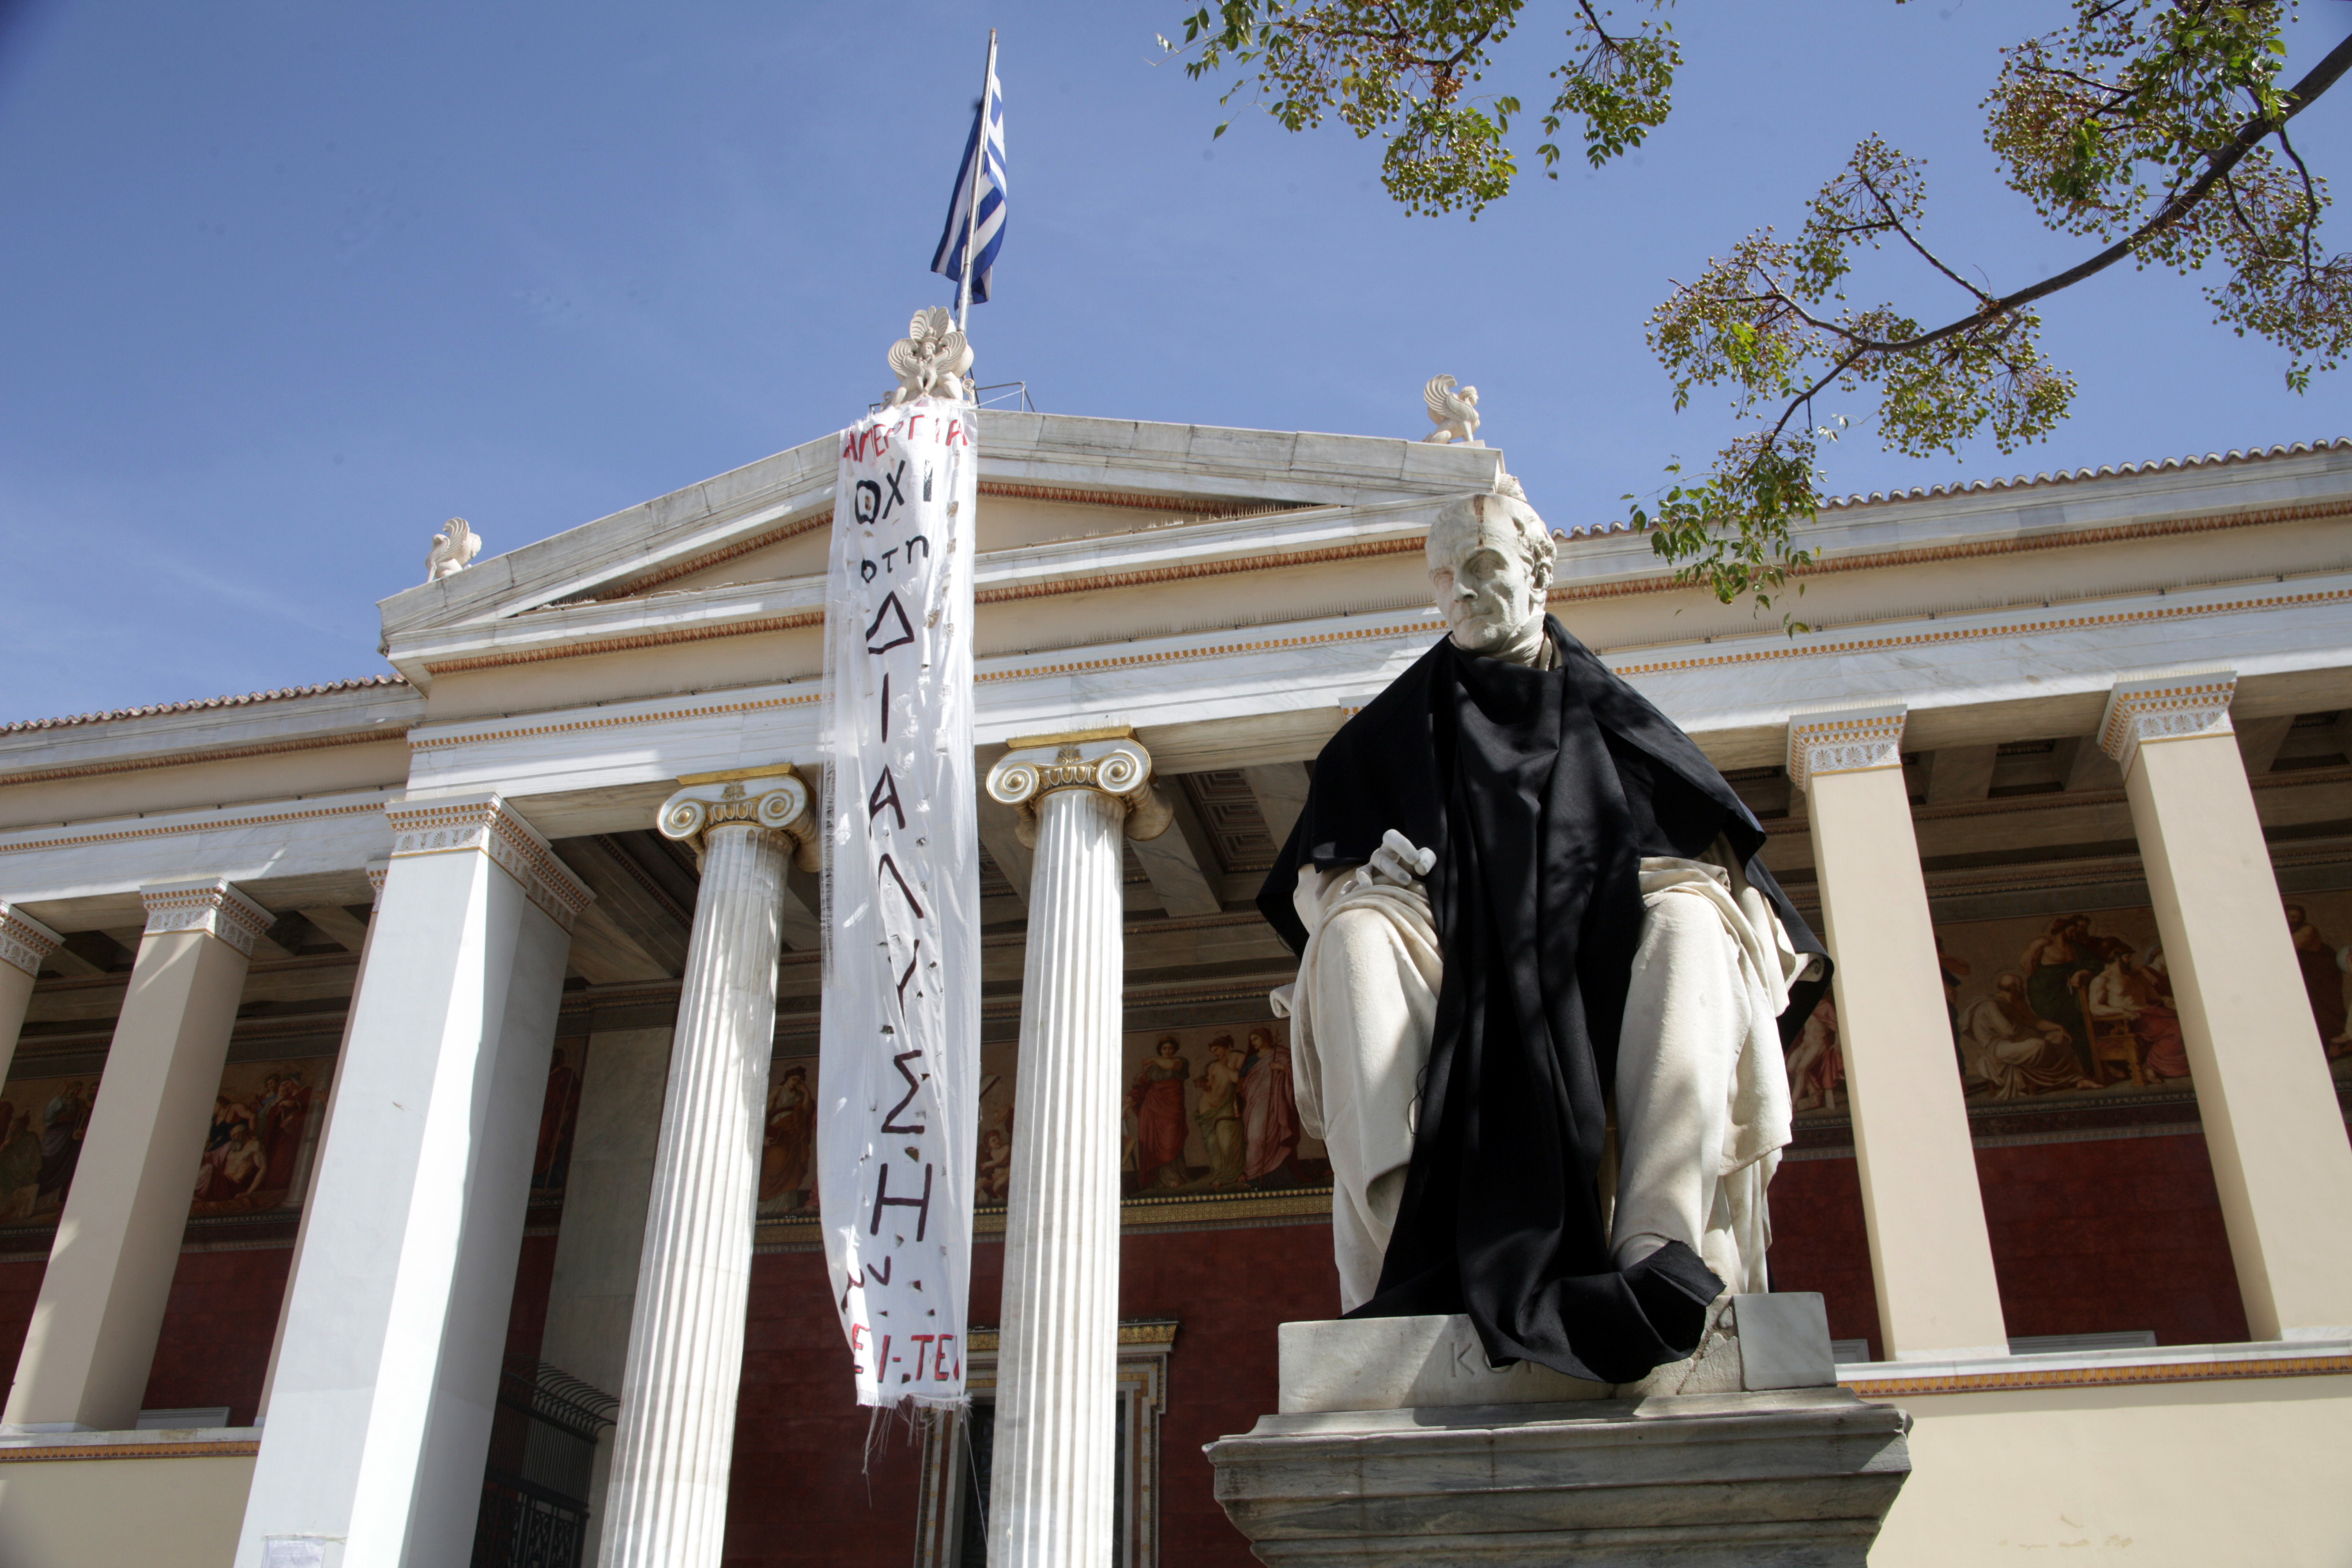 Πληρώνονται κανονικότατα ενώ απεργούν οι διοικητικοί υπάλληλοι στο Πανεπιστήμιο Αθηνών και στο Μετσόβιο!